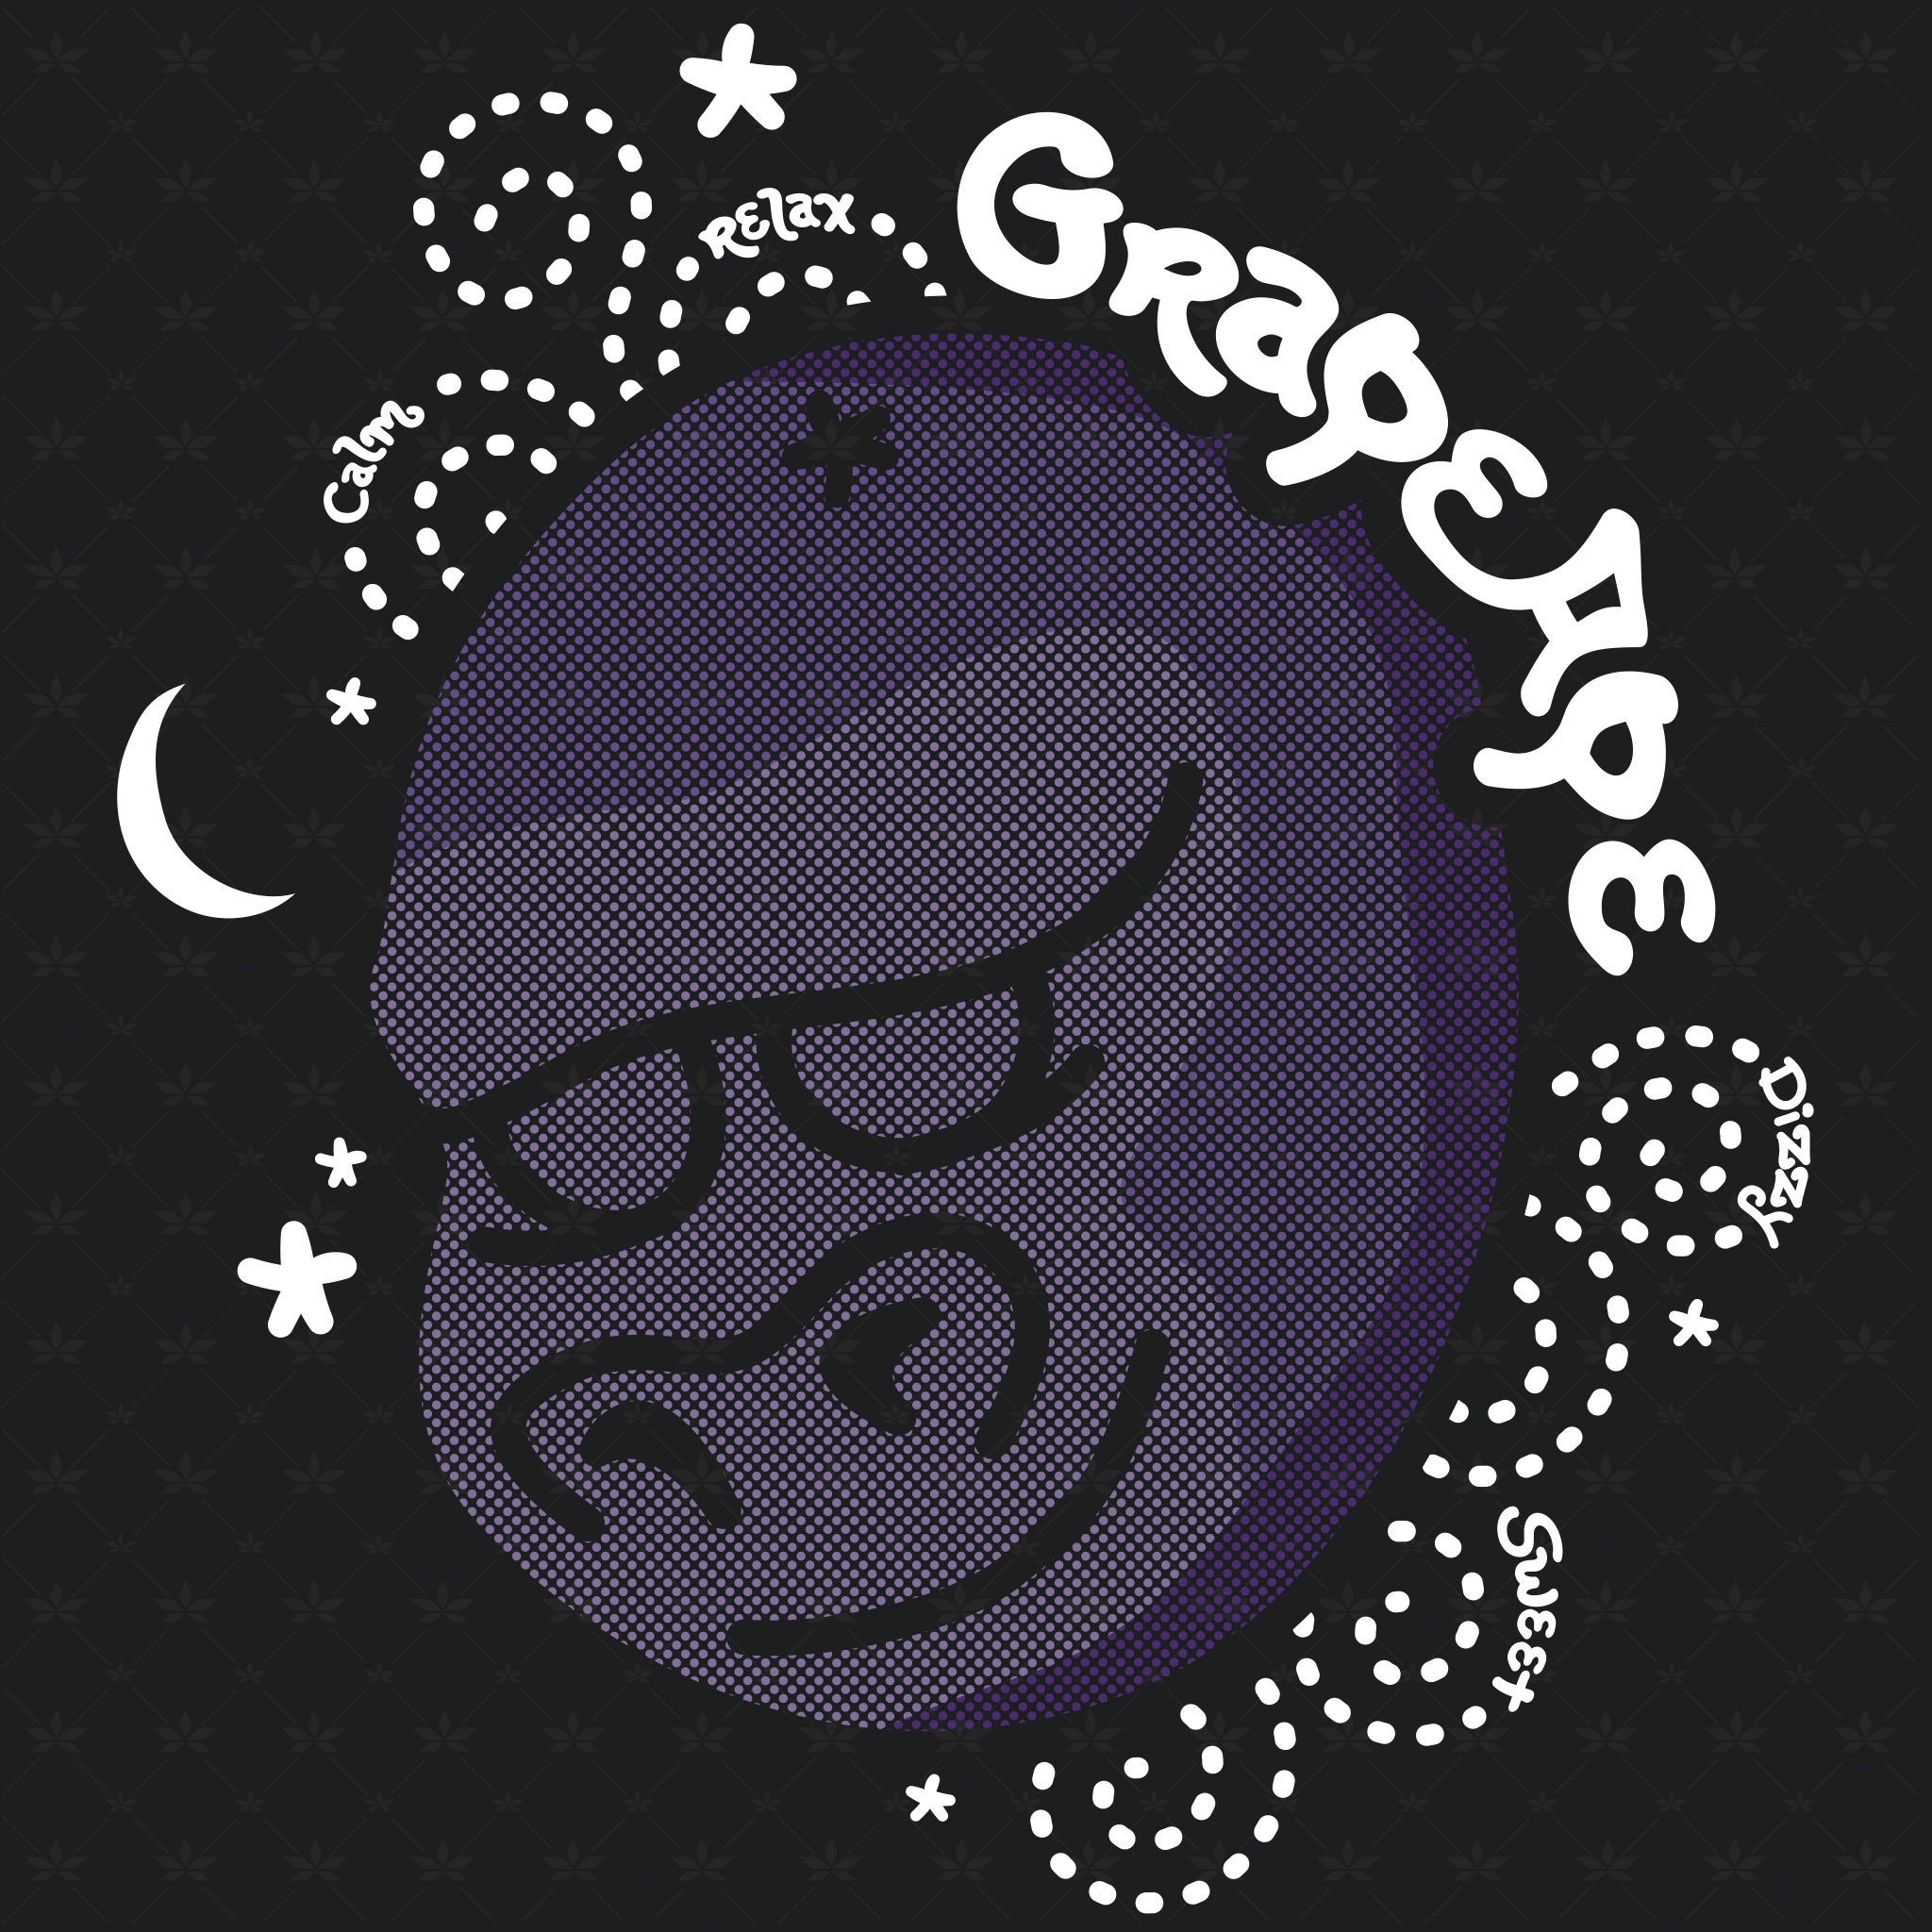 Grape Ape Strain